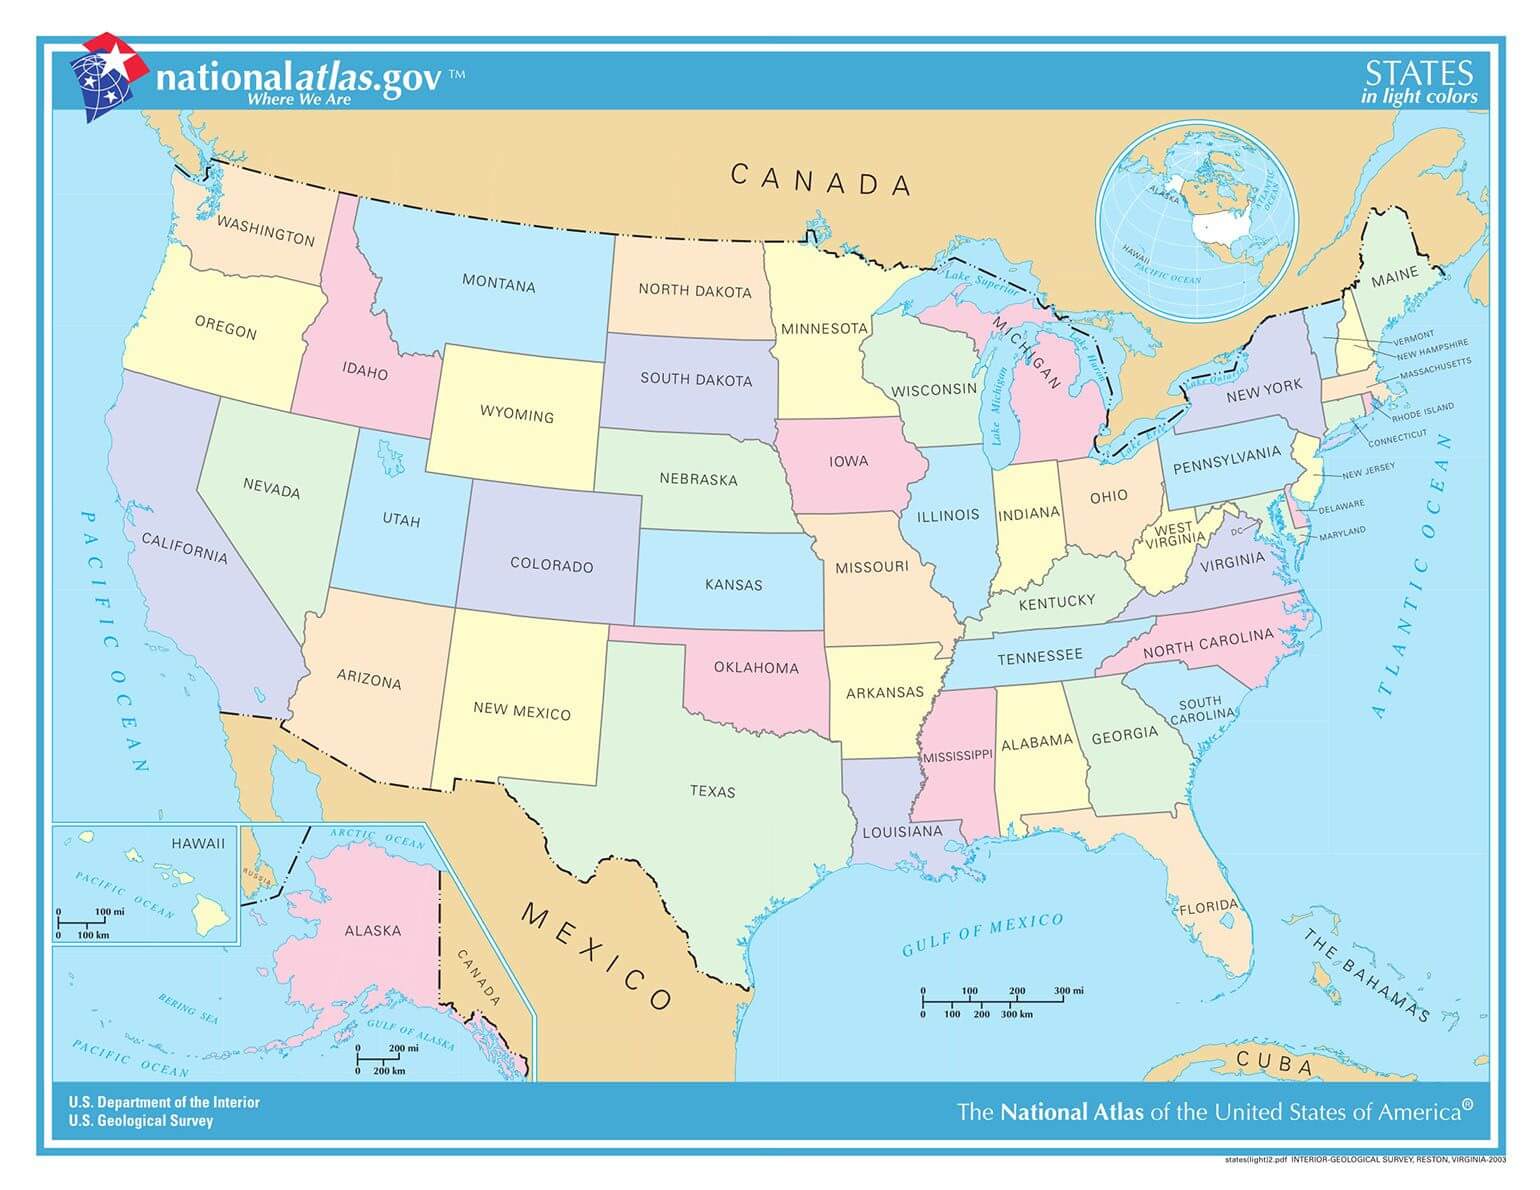 ᐅ Karte der USA | Alle 50 Bundesstaaten im Überblick